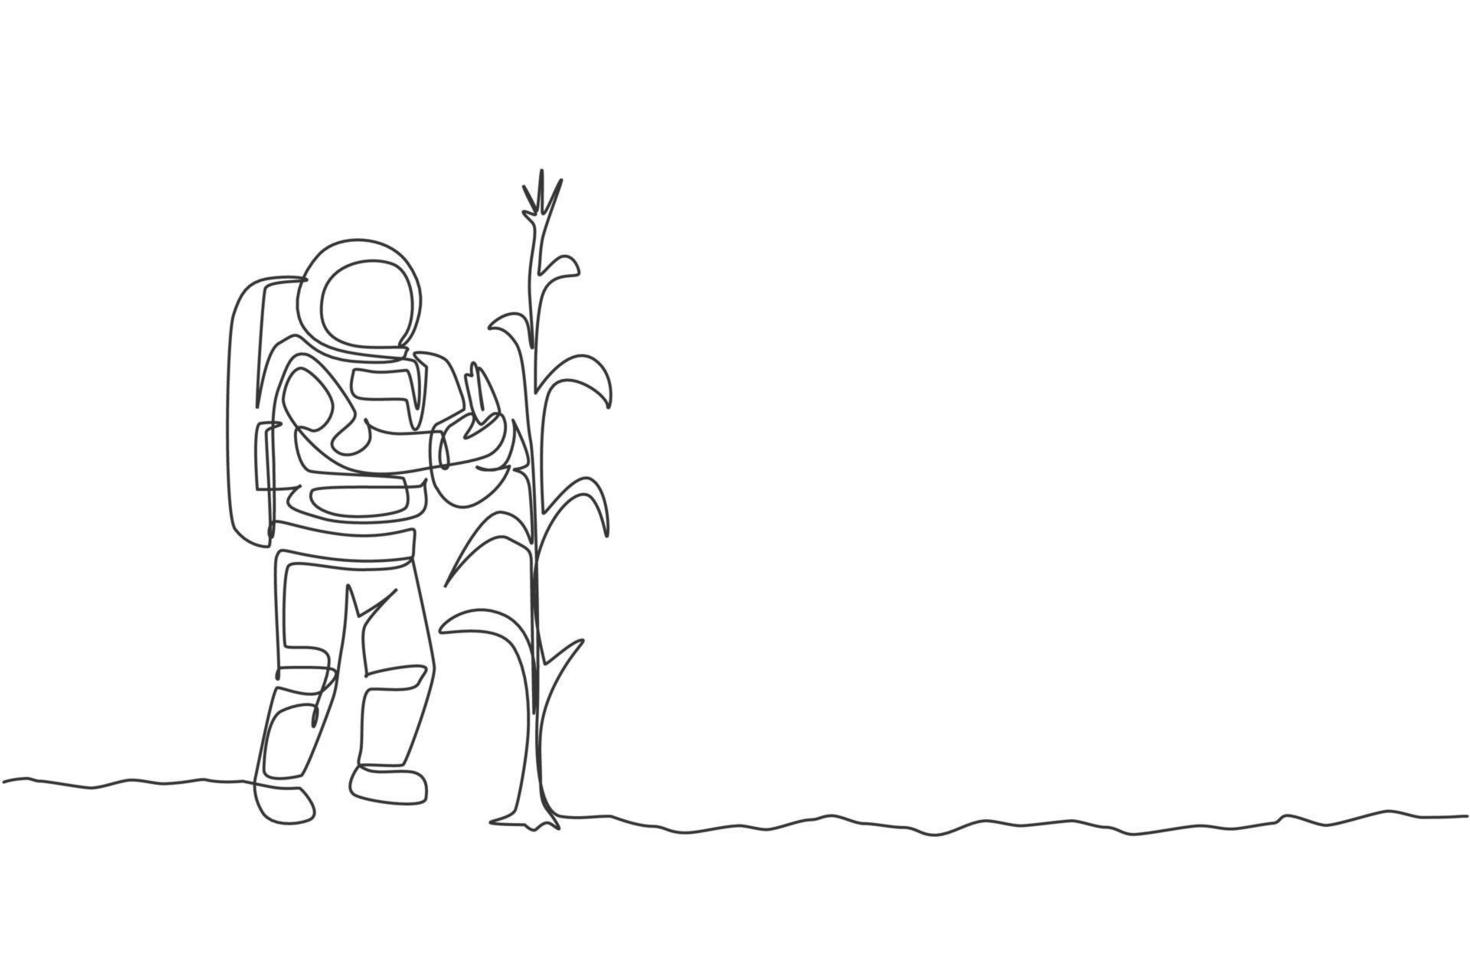 en kontinuerlig ritning av rymdmannen som plockar söt majs från växten i månytan. djupt rymd jordbruk astronaut koncept. dynamisk enkel linje rita grafisk design vektor illustration